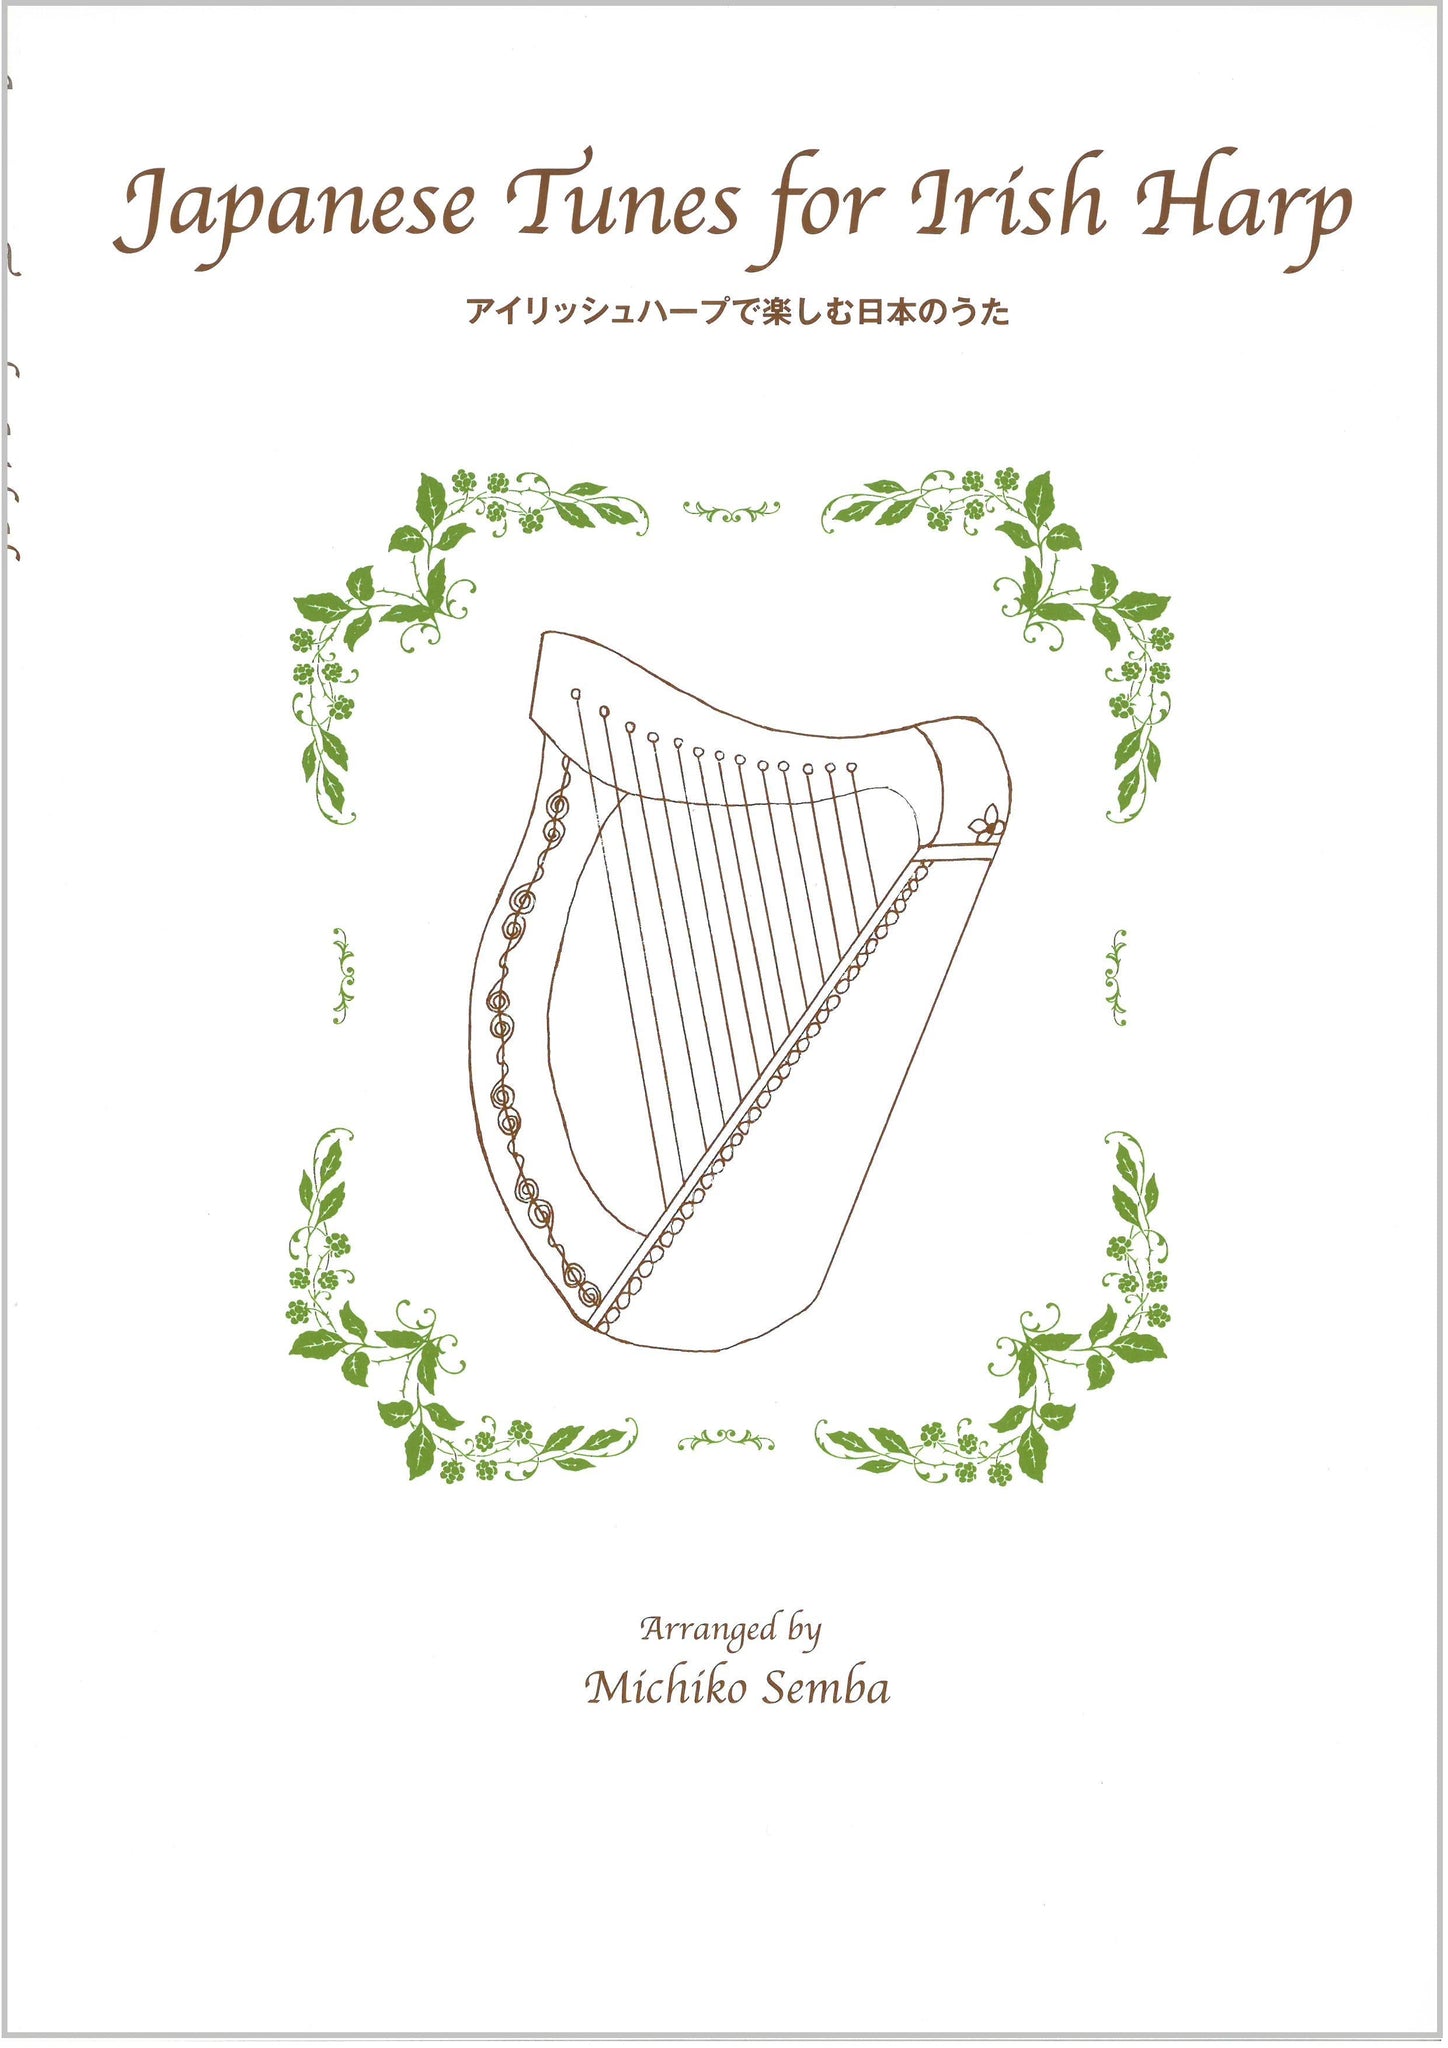 アイリッシュハープ楽譜集
『アイリッシュハープで楽しむ日本のうた』